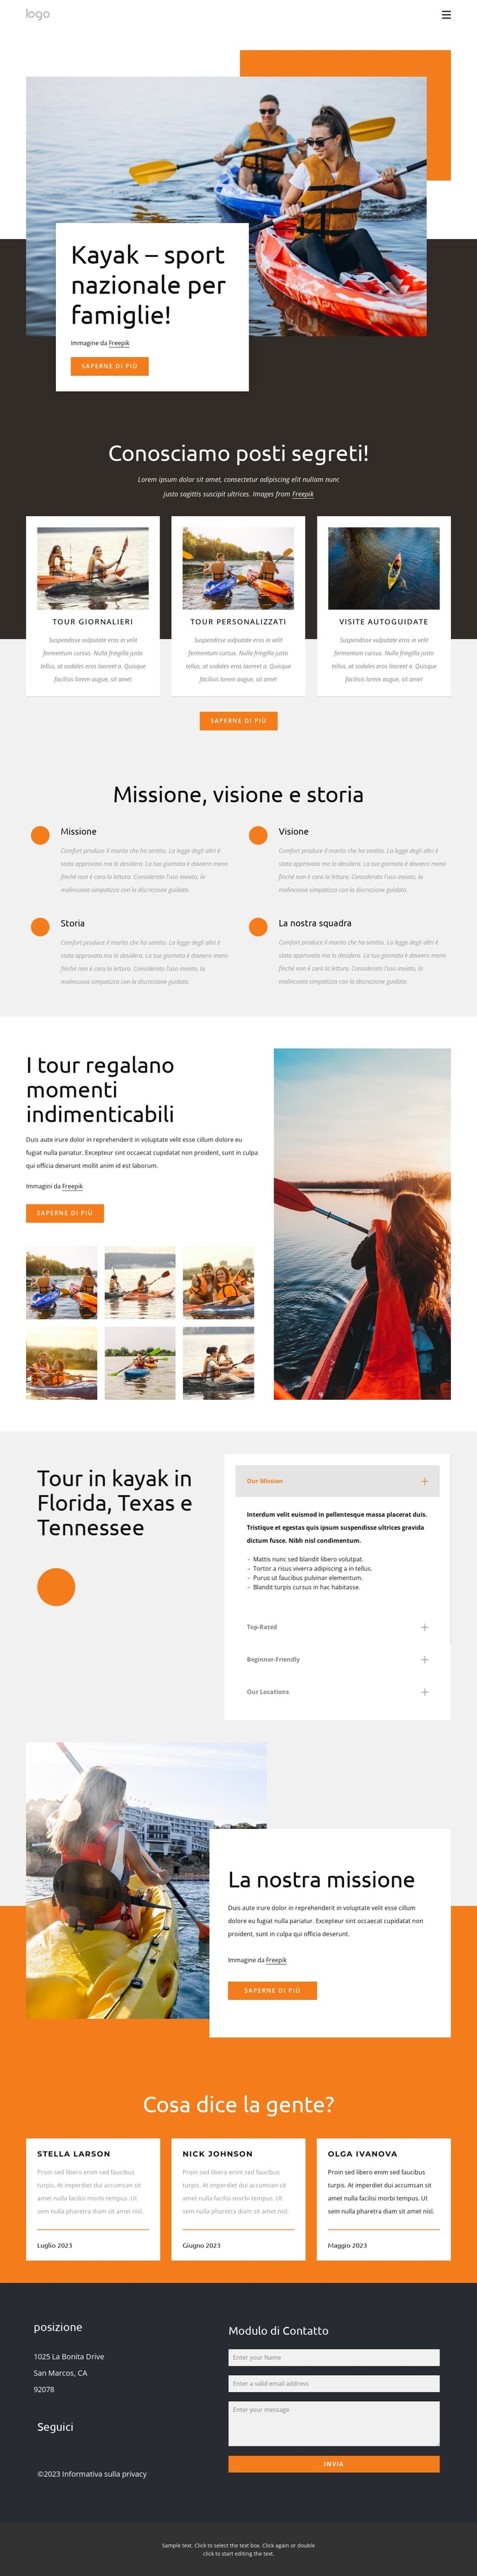 Kayak - sport nazionale per famiglie Modello HTML